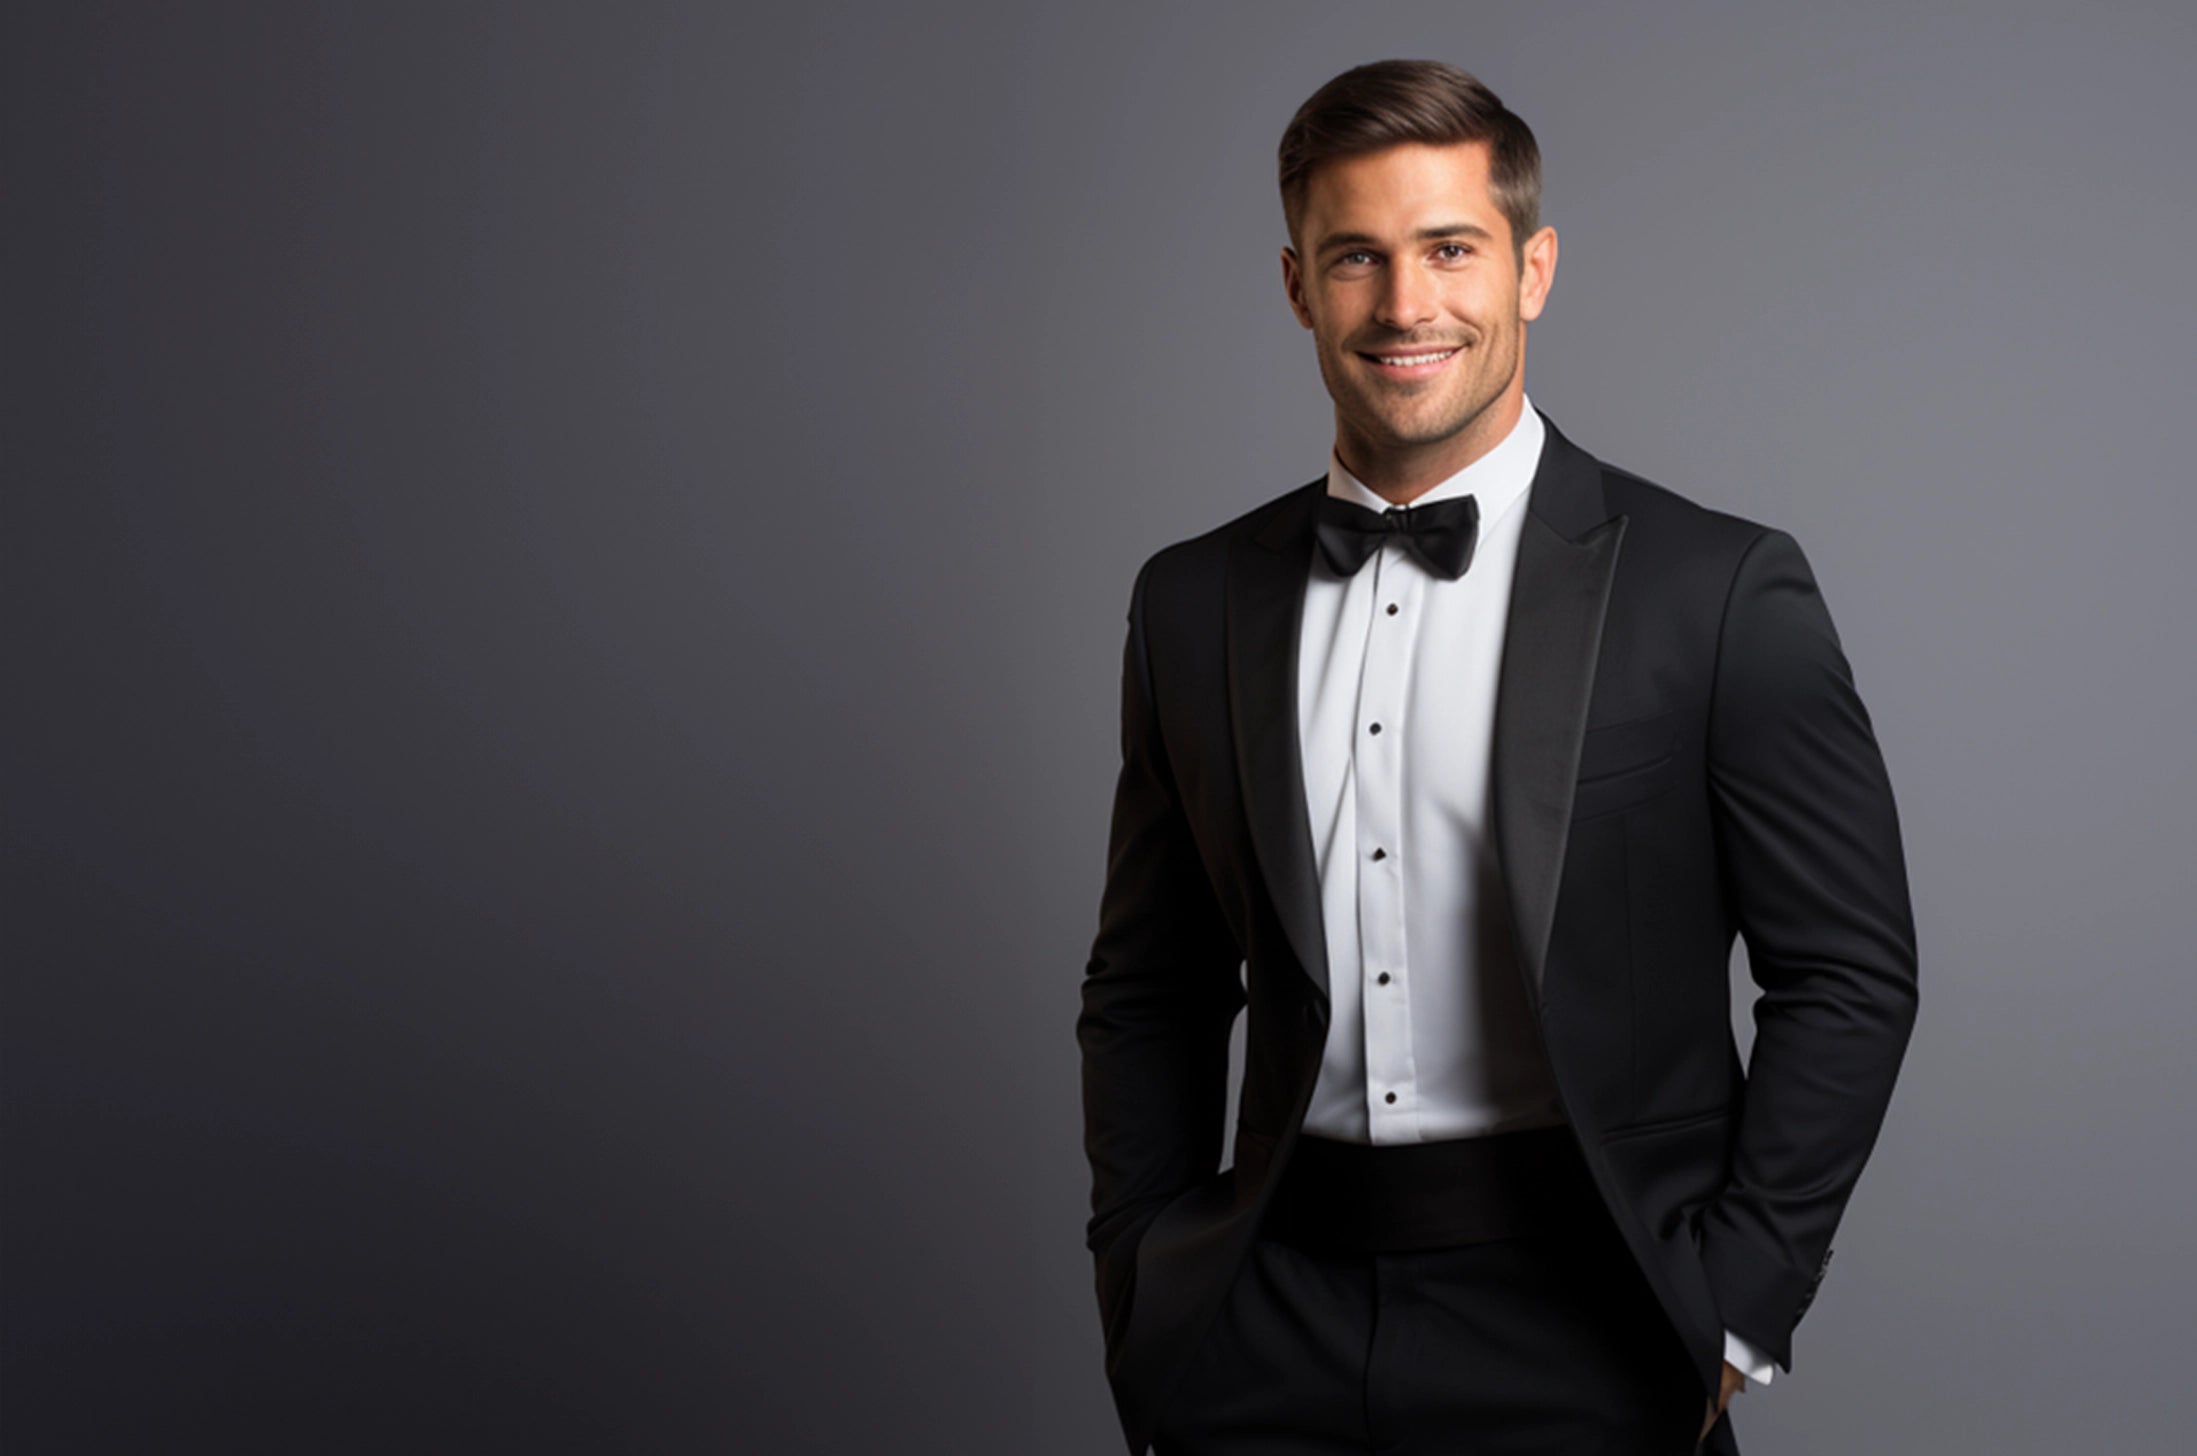 Elegant peak lapel tuxedo, showcasing classic style for formal events